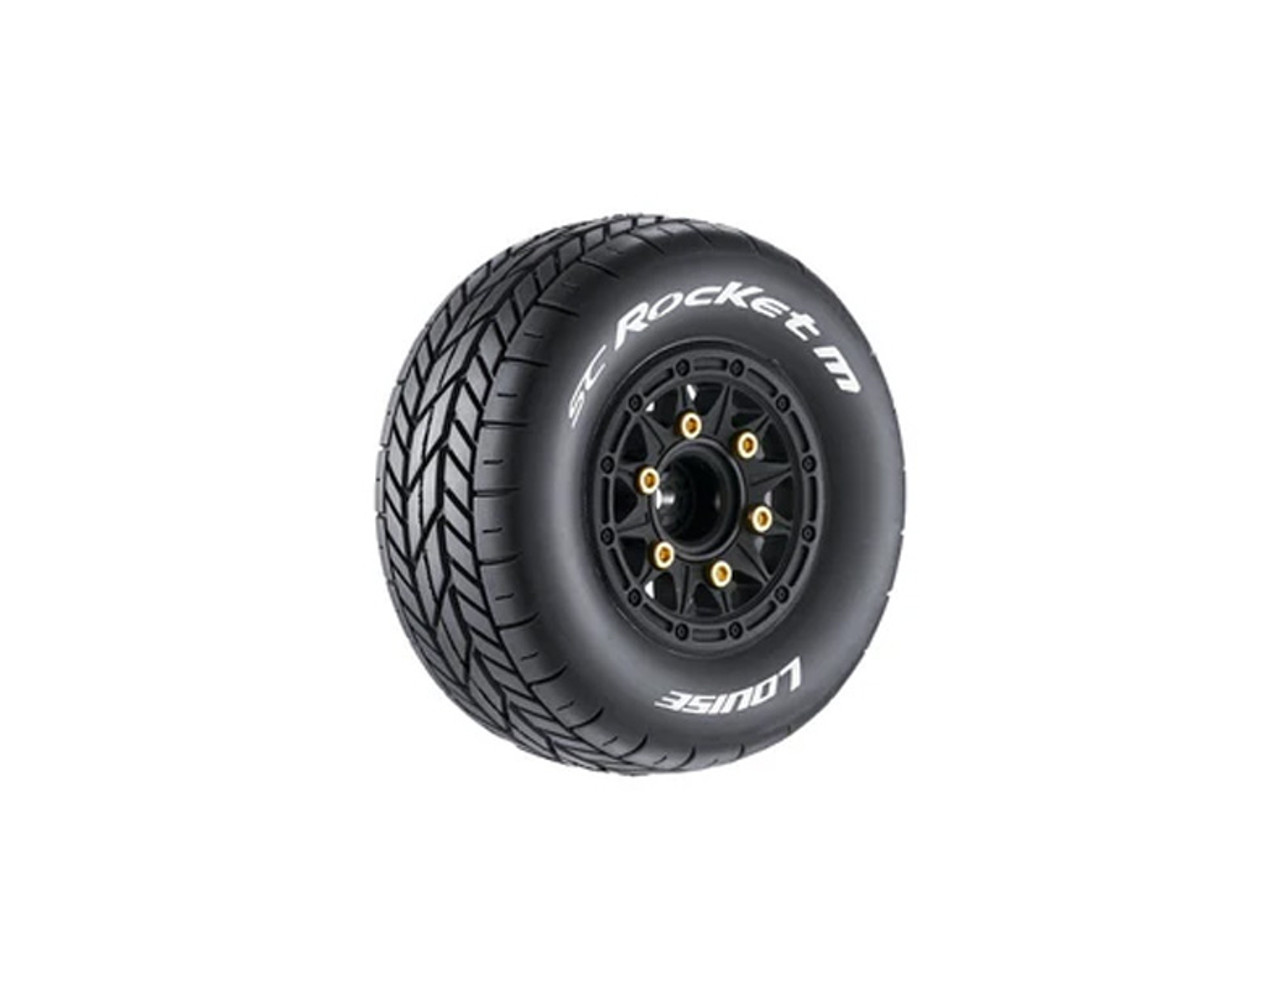 SC-Rocket M Oval Track 1/10 Short Course Tires, Super Soft, 12, 14 & 17mm Hex on Black Rim (2)